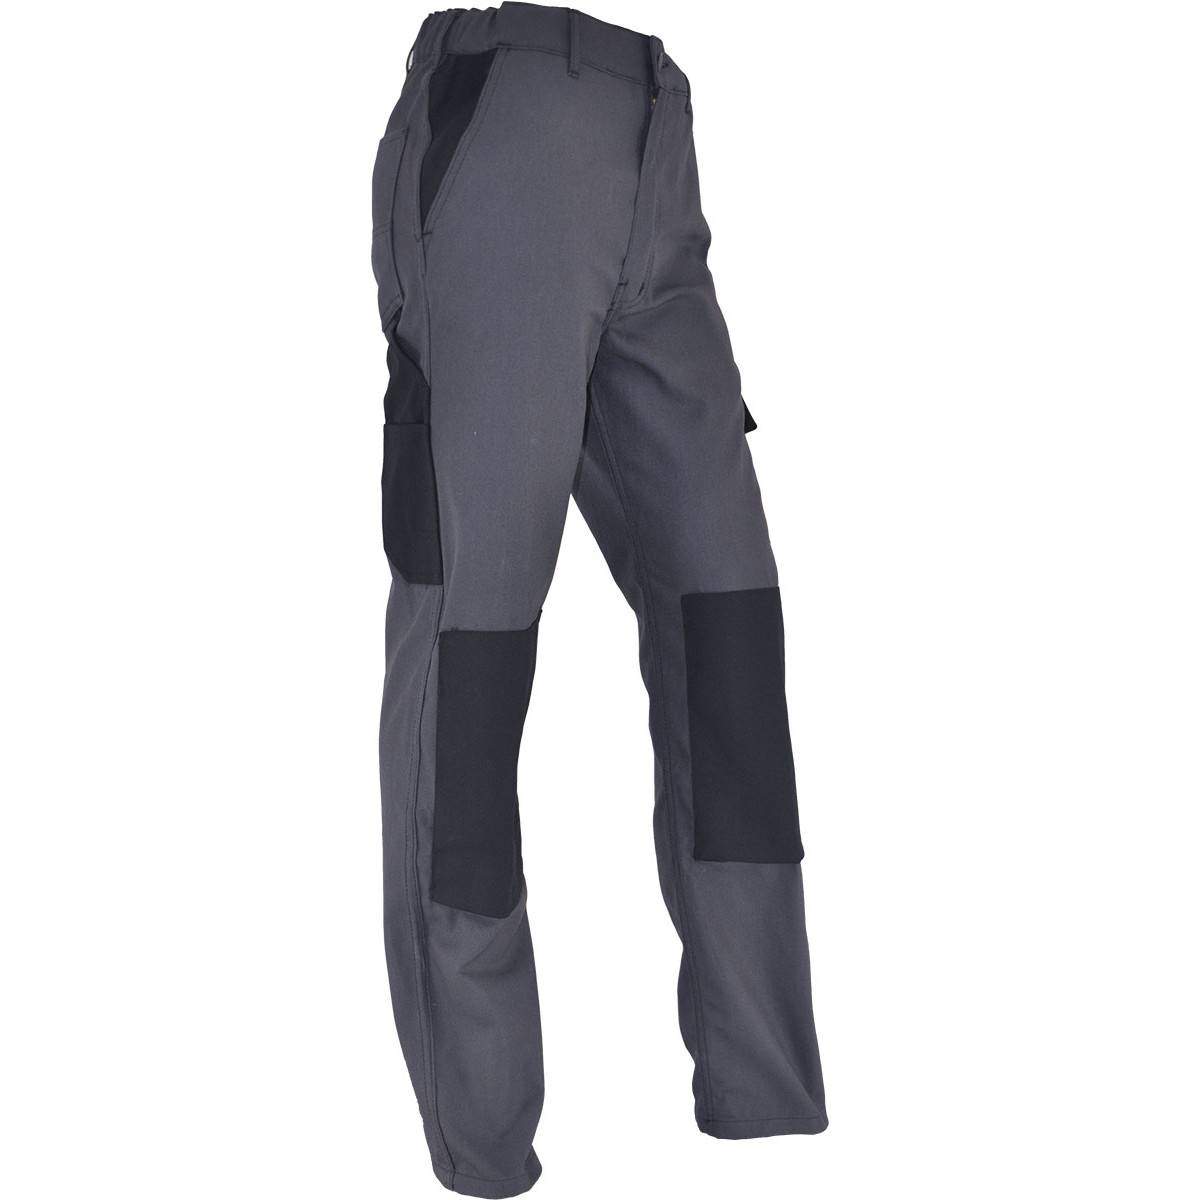 PMPC pantaloni da lavoro comfort taglia 40, grigio antracite